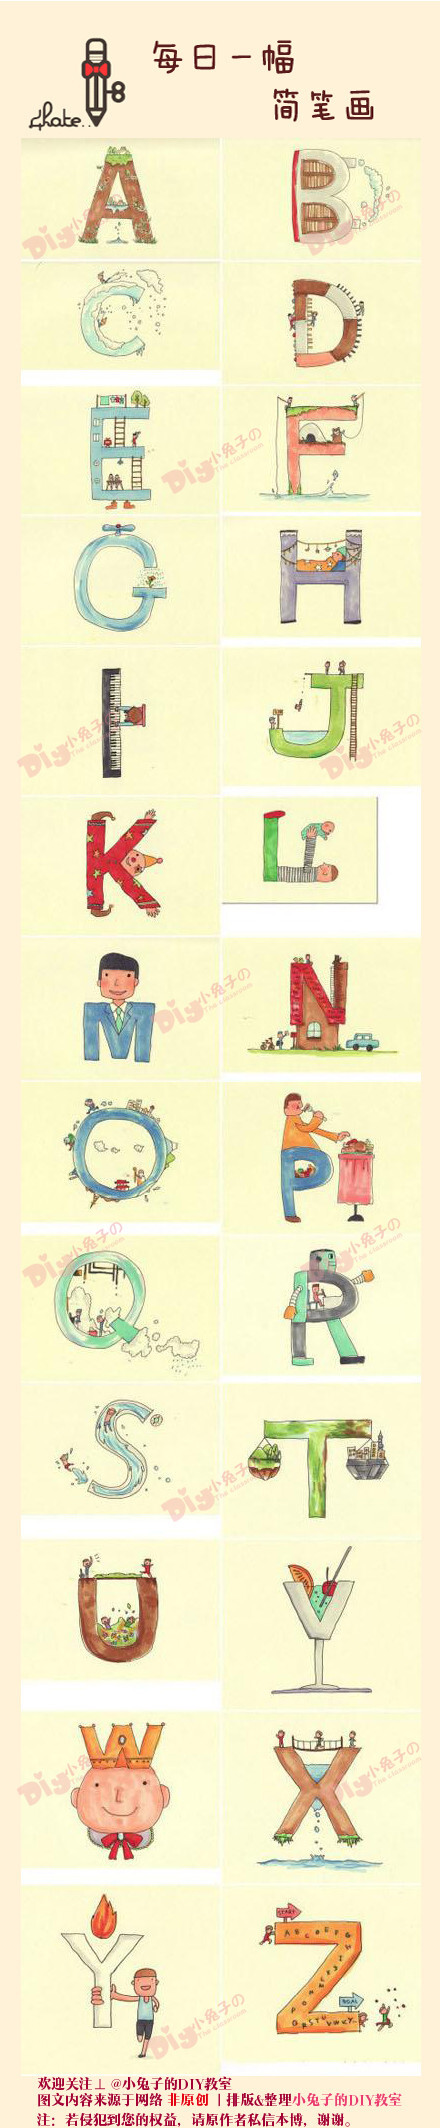 字母的创意发挥你的想象力创意结合简笔画属于你的26个字母